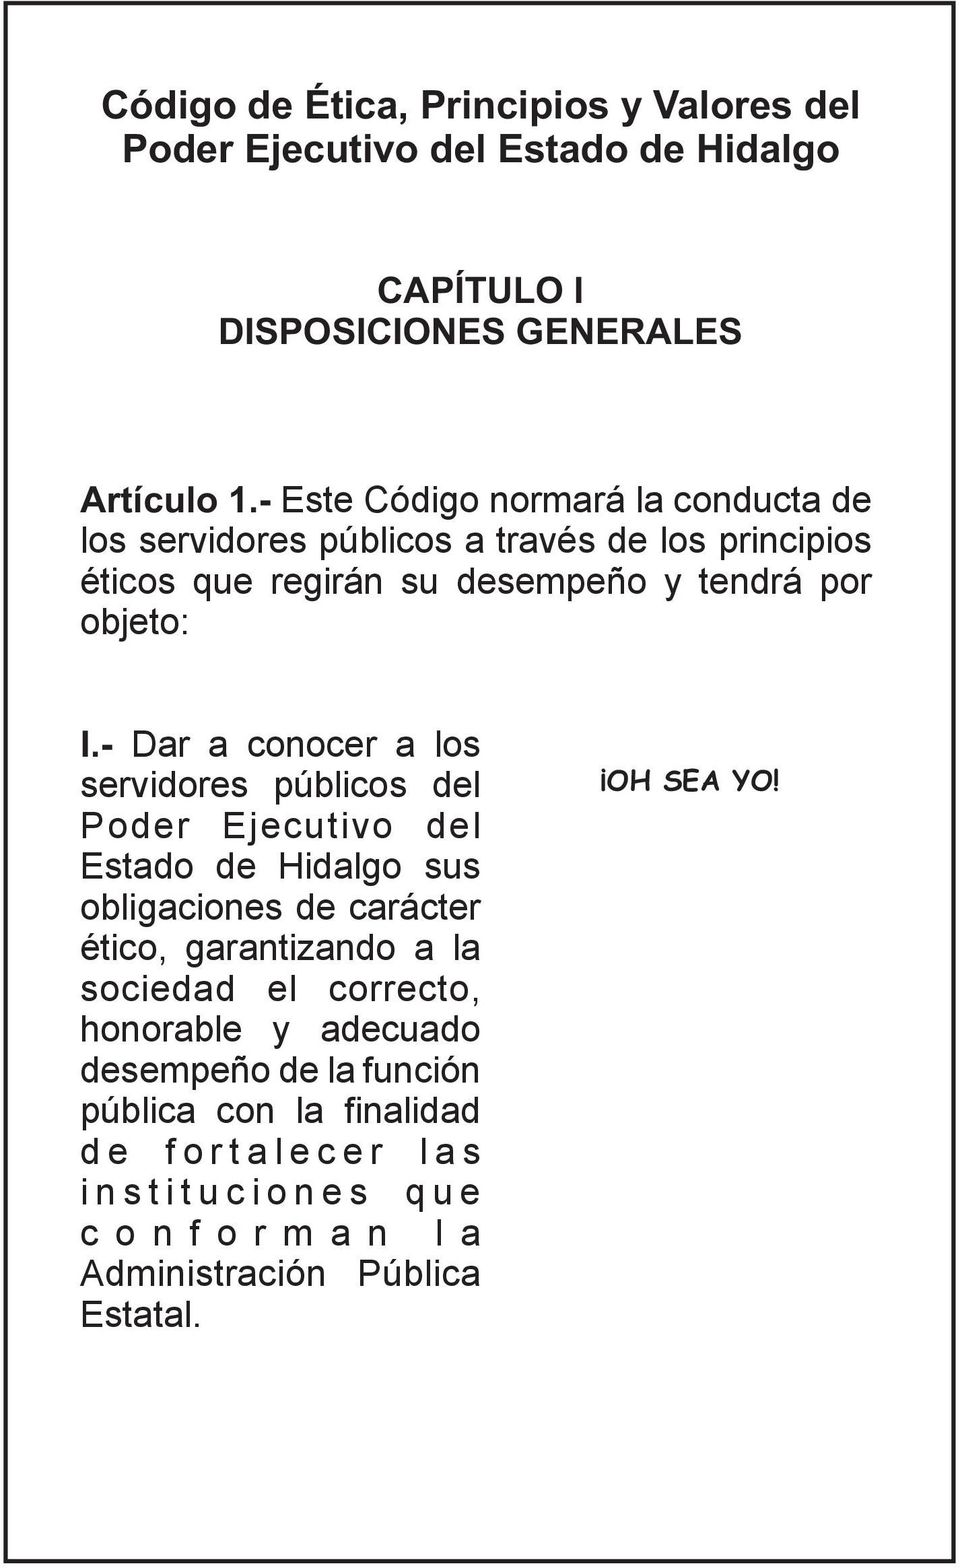 - Dar a conocer a los servidores públicos del Poder Ejecutivo del Estado de Hidalgo sus obligaciones de carácter ético, garantizando a la sociedad el